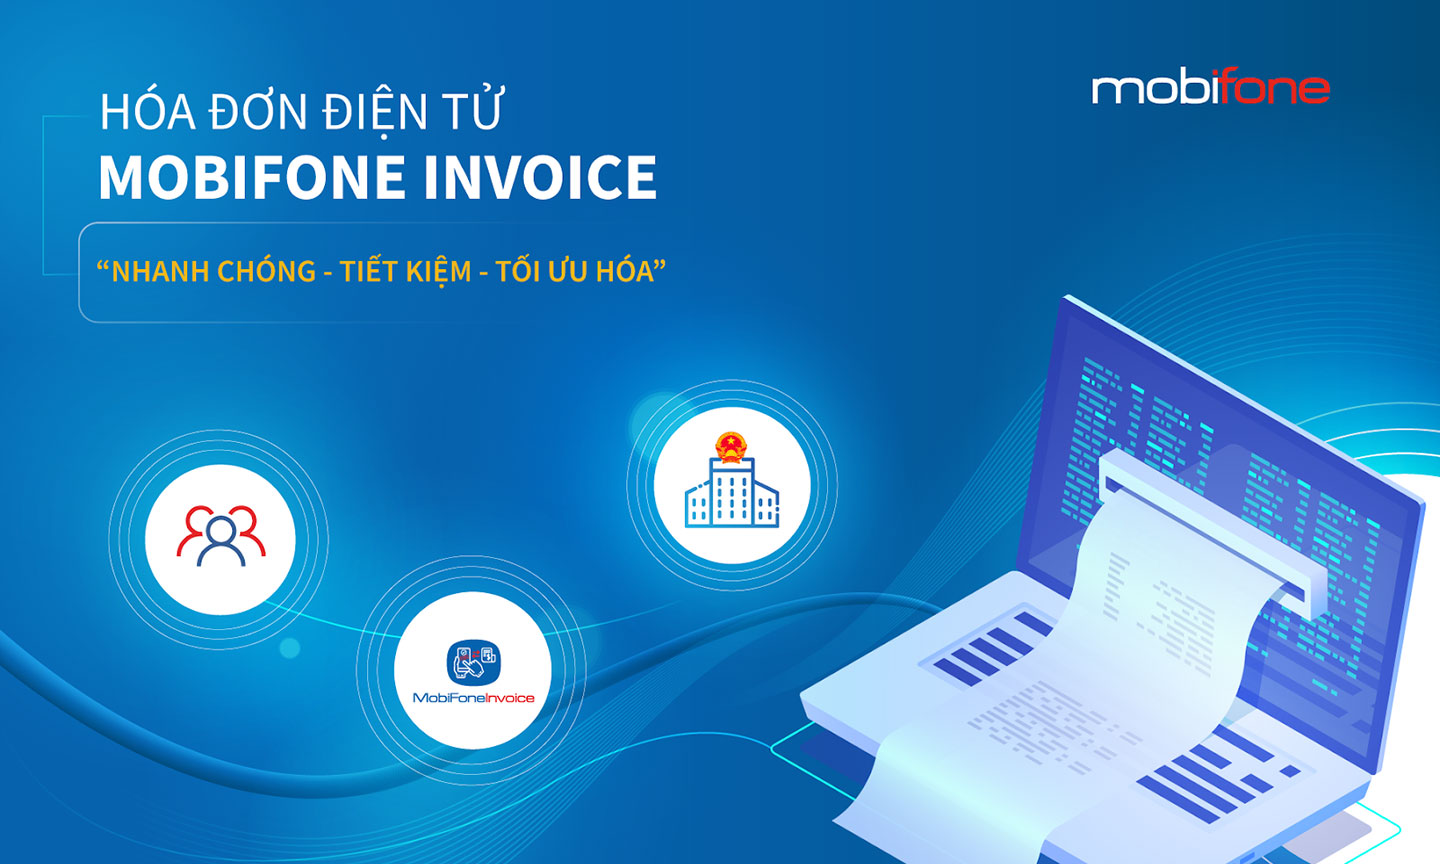 Hóa đơn điện tử MobiFone Invoice đáp ứng đầy đủ quy định theo Thông tư 78/2021/TT-BTC và Nghị định 123/2020/NĐ-CP.